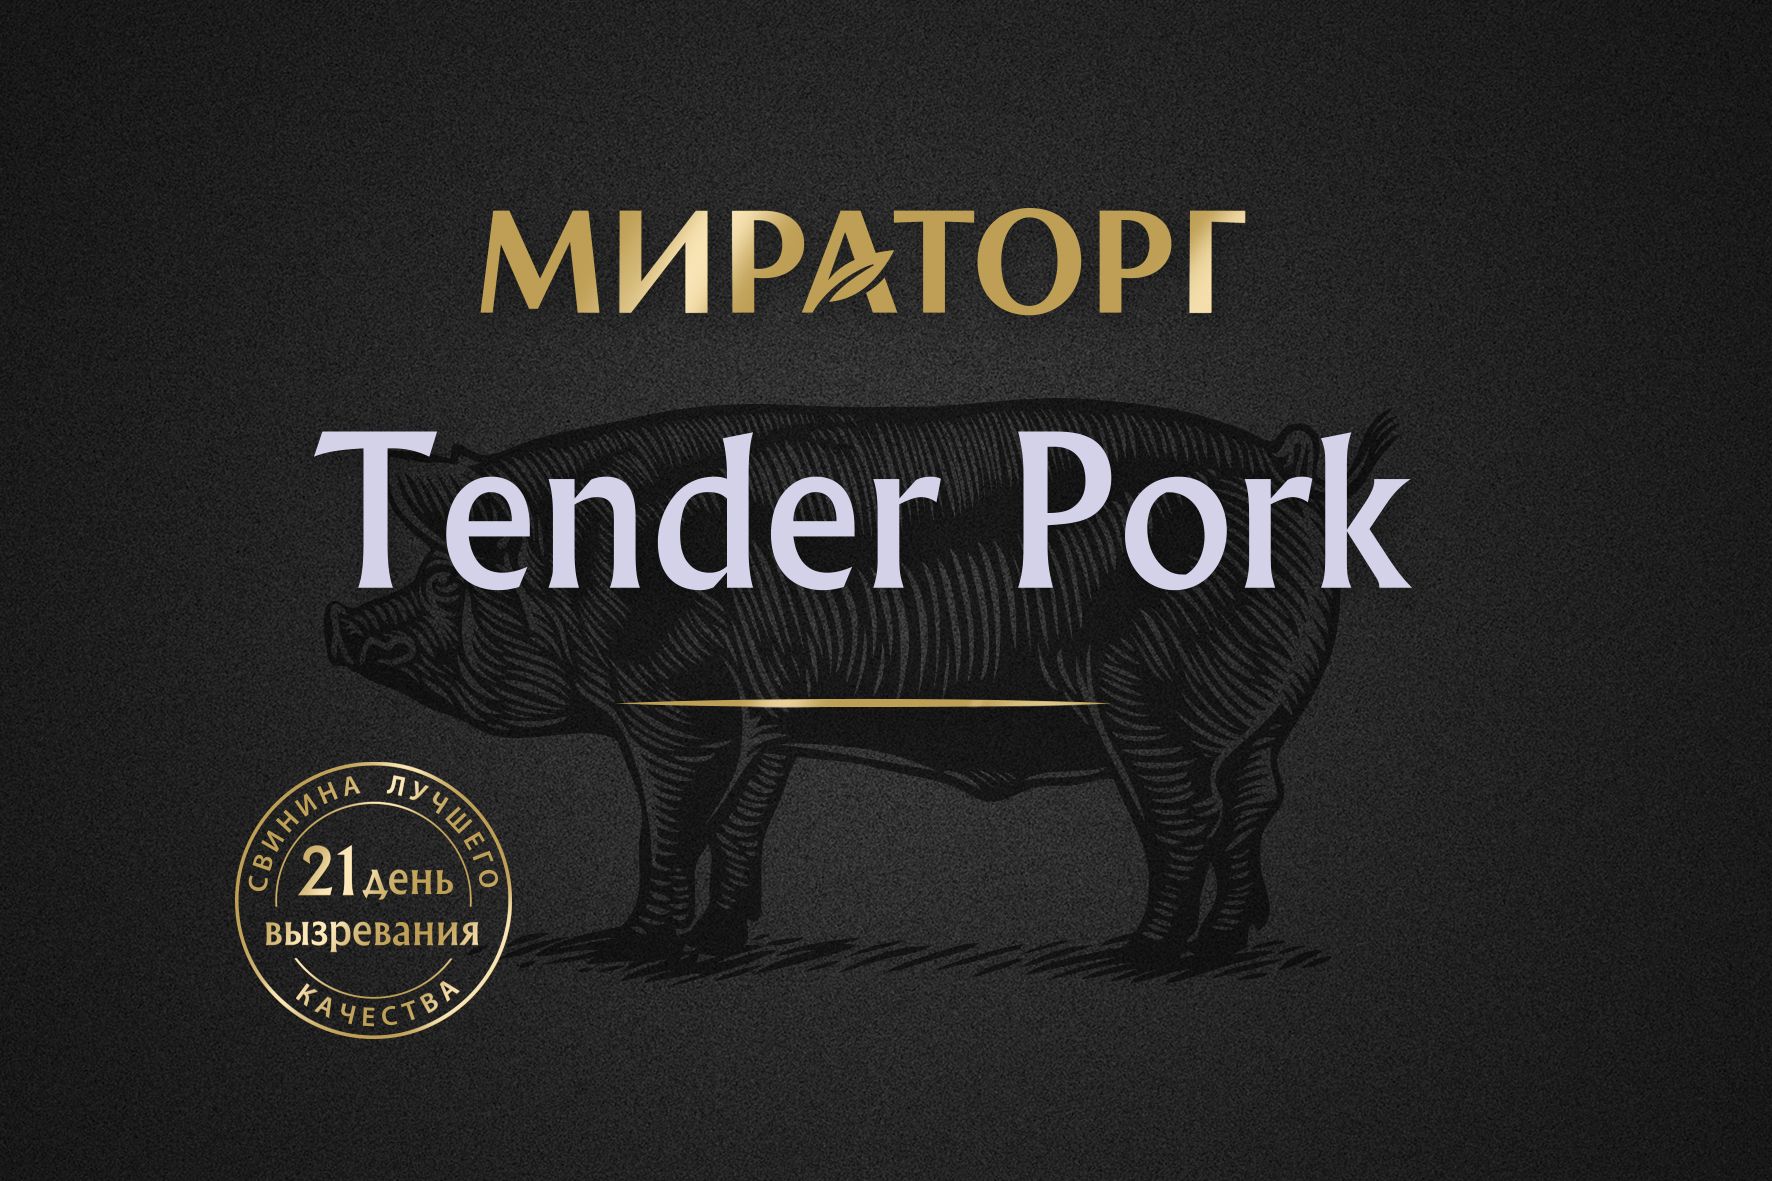 Tender Pork